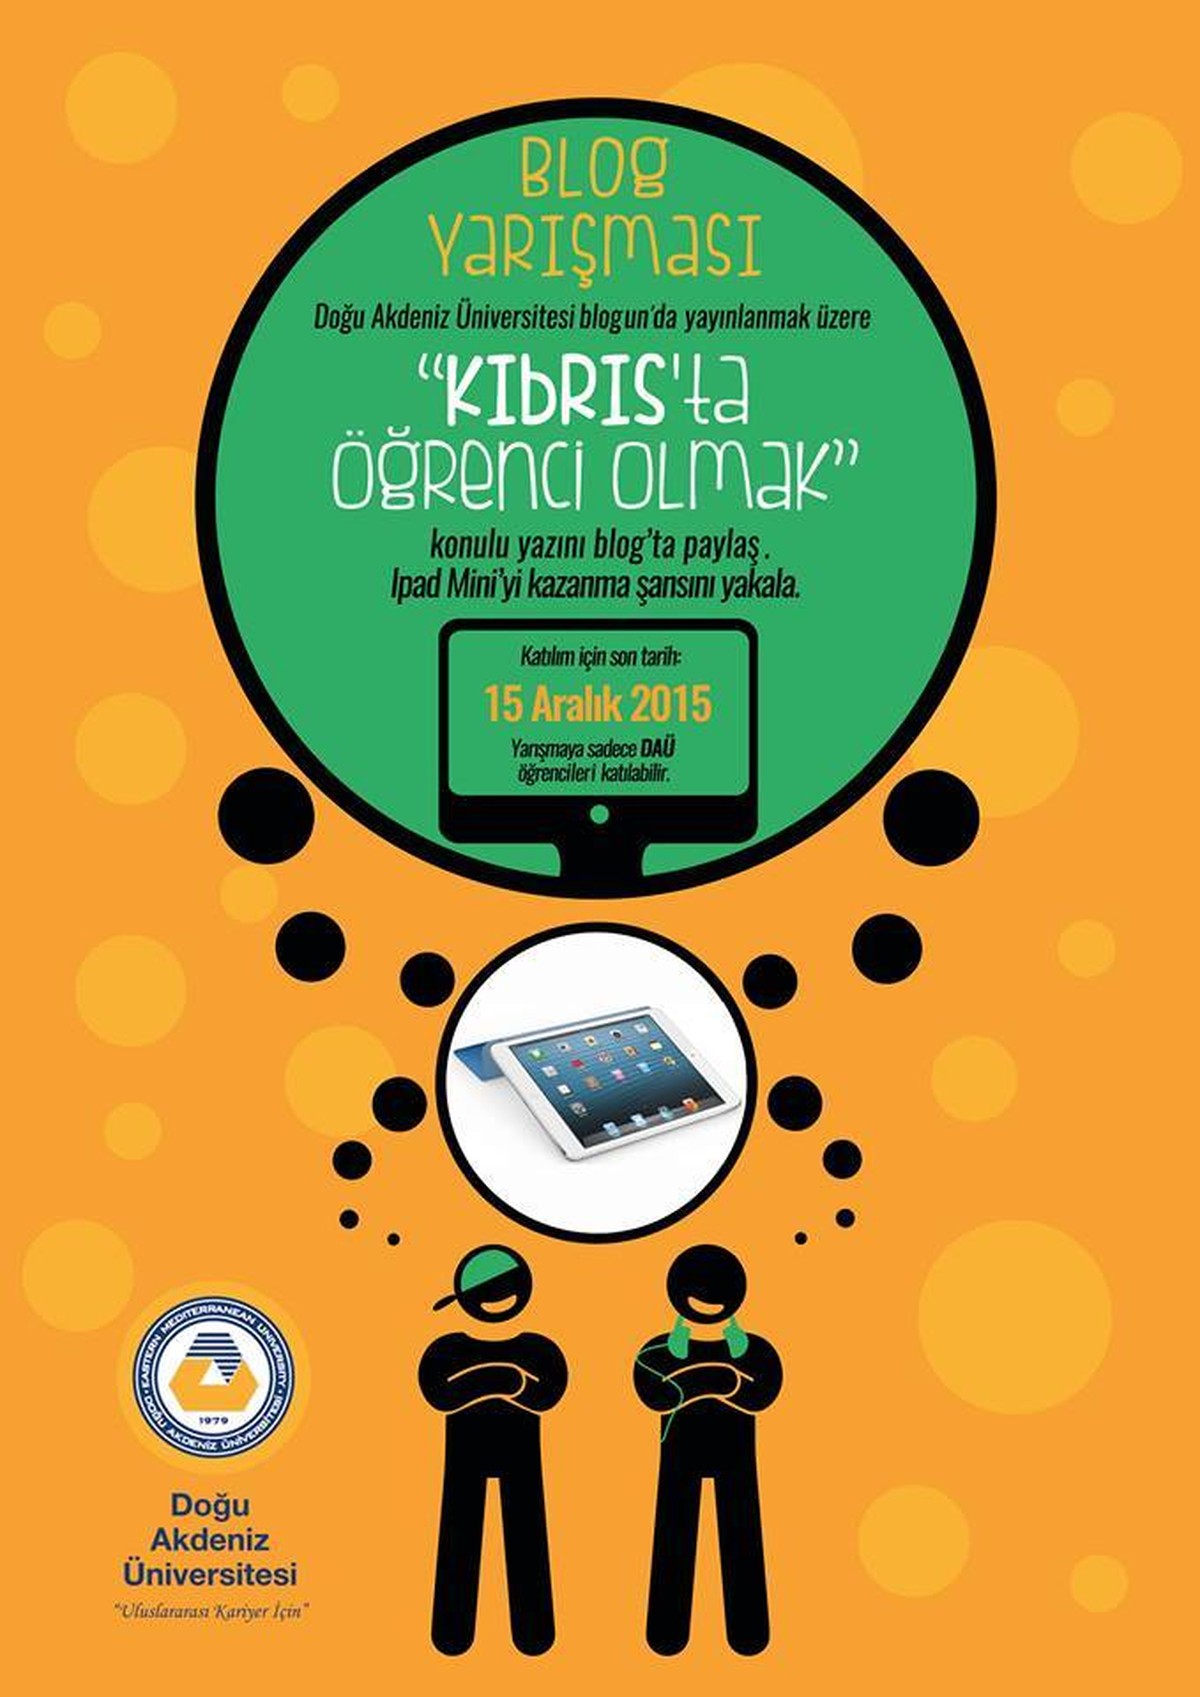 'Kıbrıs'ta Öğrenci Olmak' Konulu Blog Yarışması